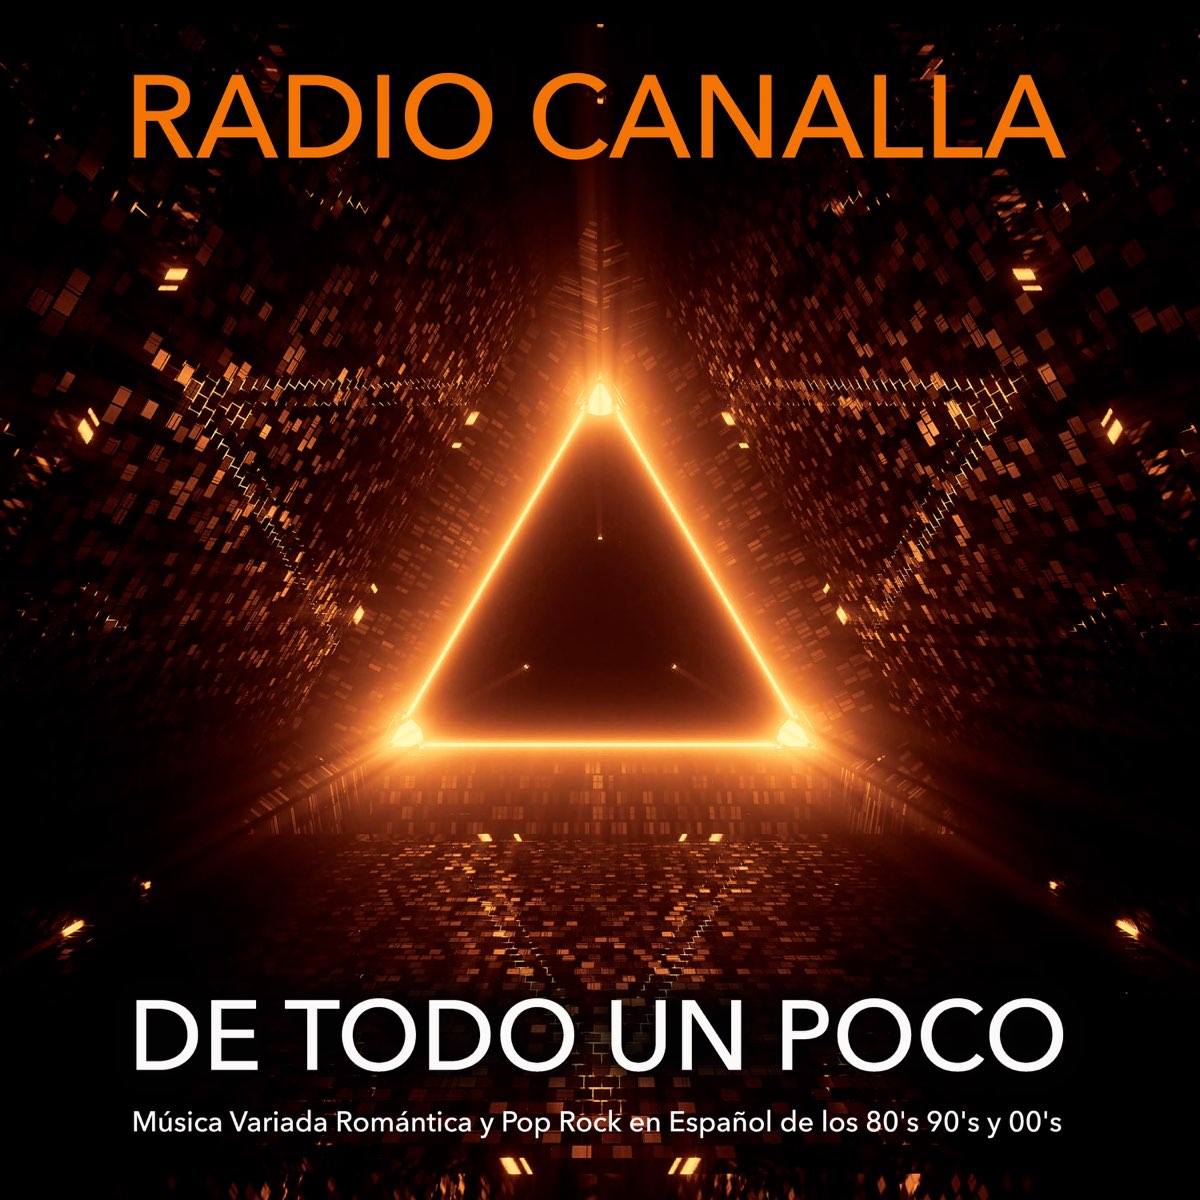 De Todo un Poco: Música Variada Romántica y Pop Rock en Español de los 80'S  90'S y 00'S - Album by Radio Canalla - Apple Music